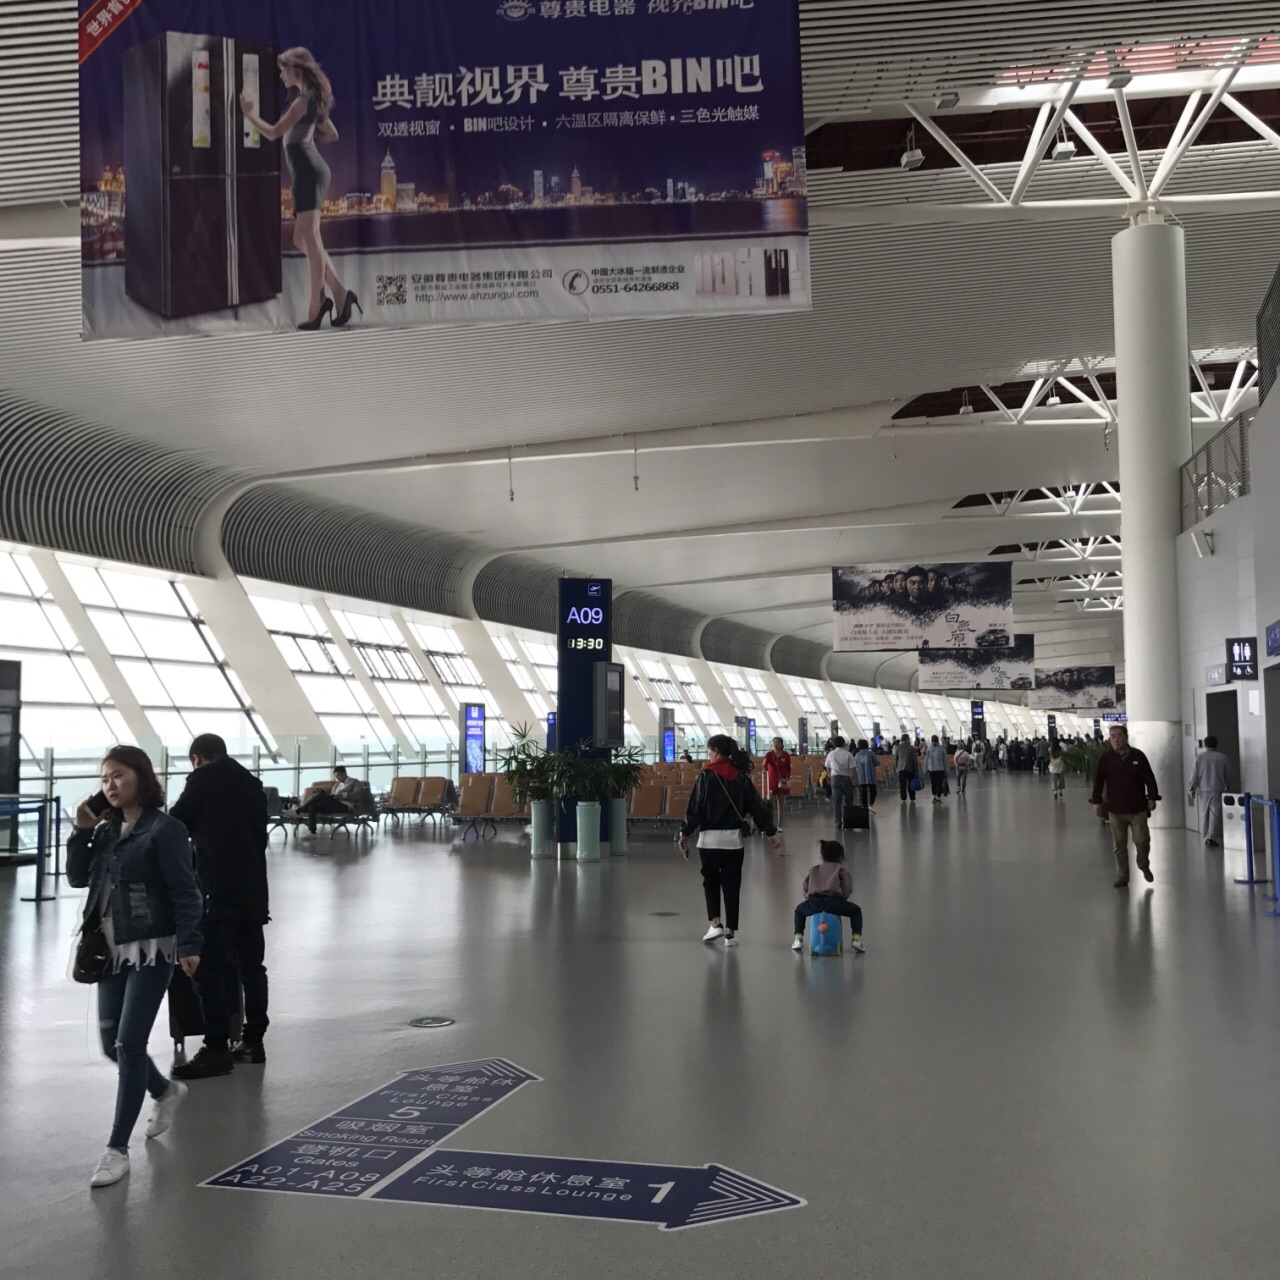 合肥新桥机场是一座现代化的国际机场,规模适当,很容易找到登机口